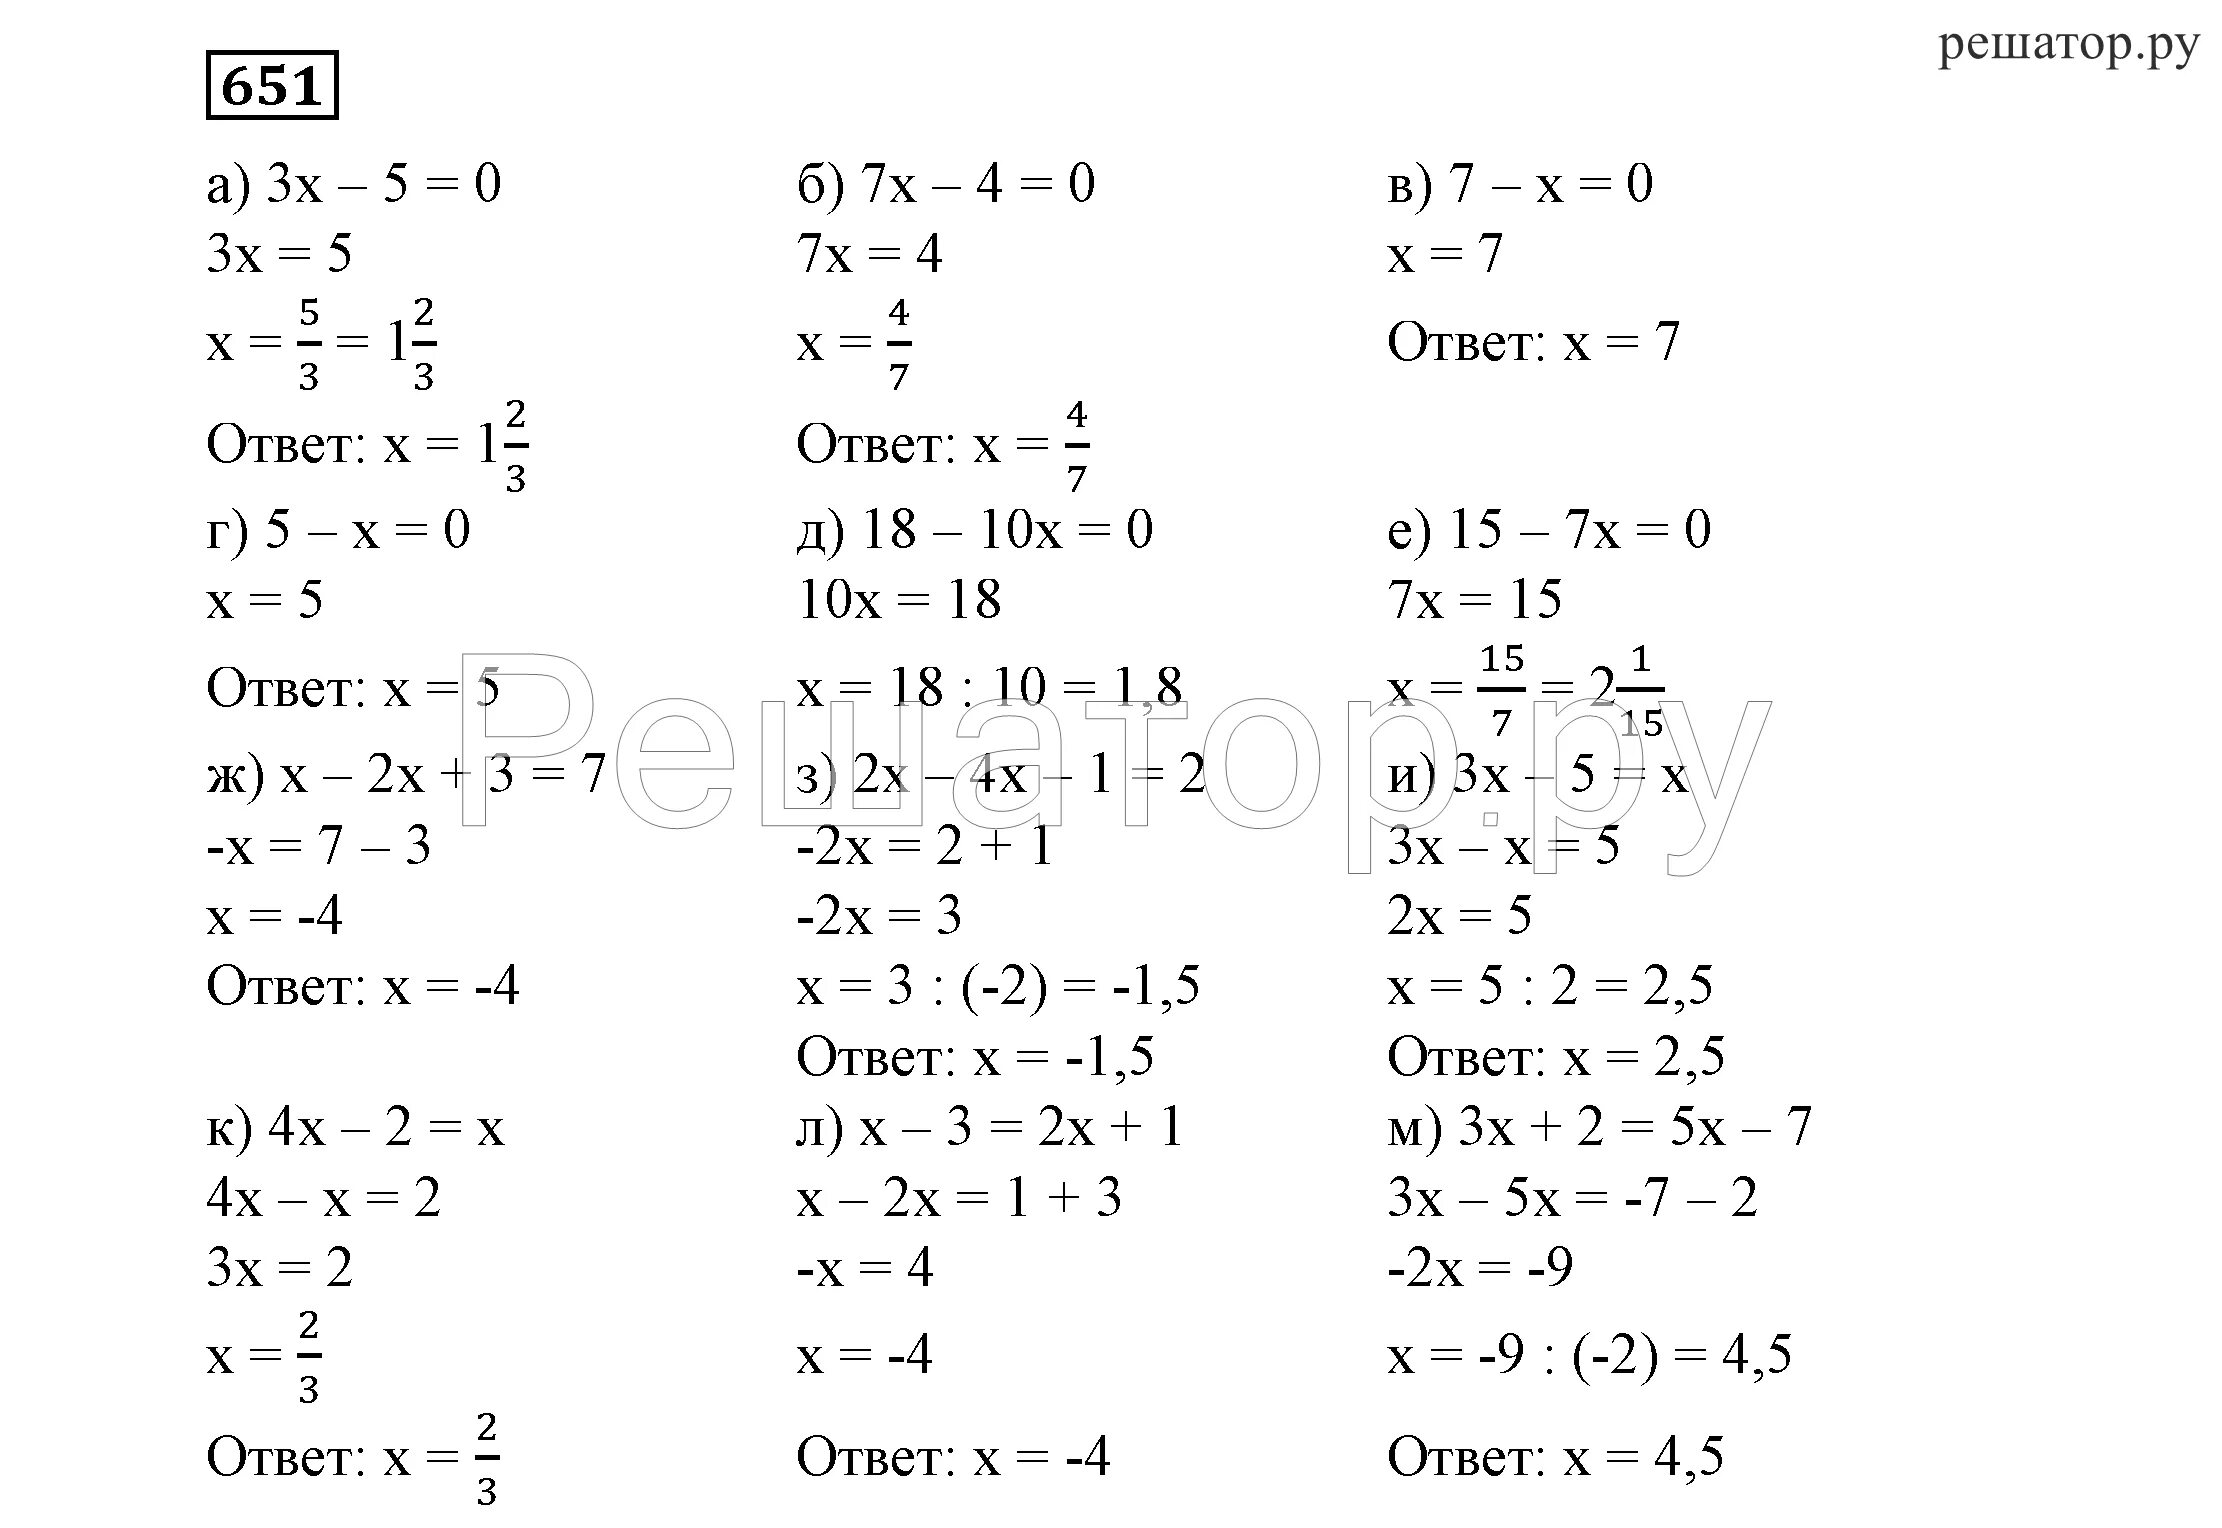 Уравнения 7 класс с ответами и решением. Уравнения для 7 класса по алгебре с ответами. Уравнения за 7 класс по алгебре с ответами. Решение уравнений 7 класс Алгебра. Задания решение уравнений 7 класс Алгебра.